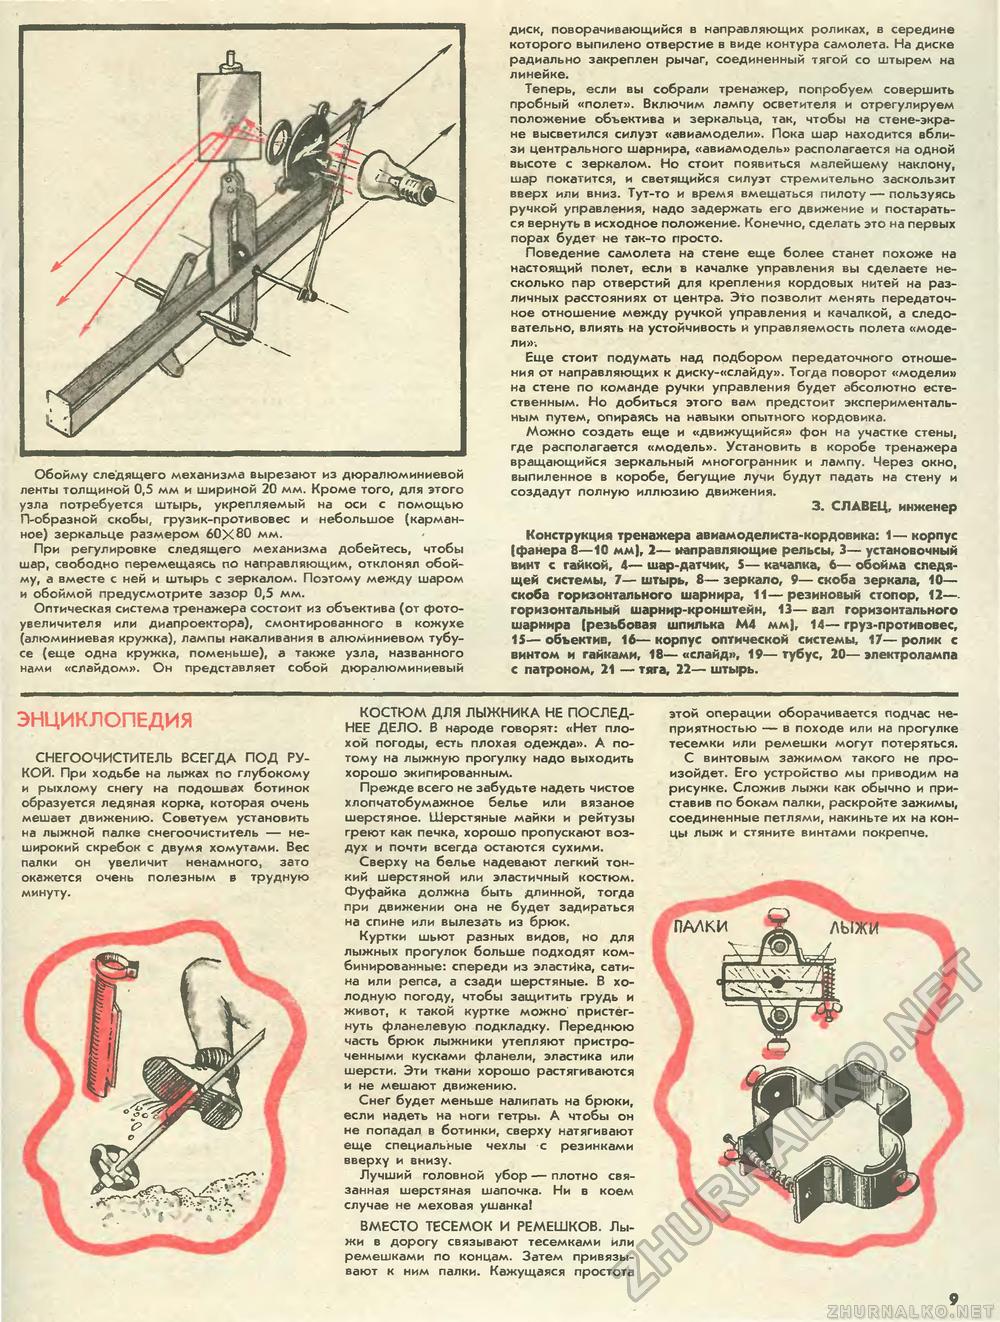 Юный техник - для умелых рук 1990-11, страница 9